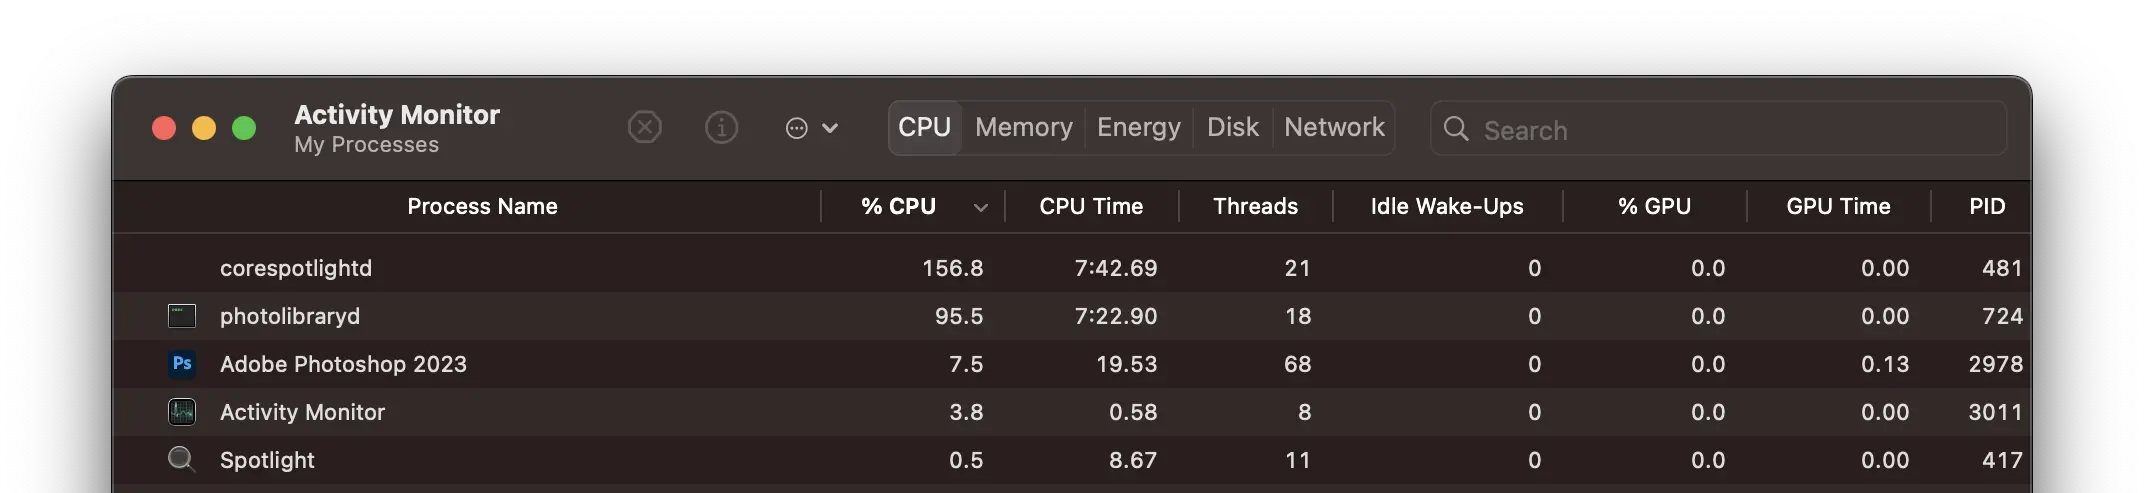 Porque corespotlightd usa altos recursos CPU